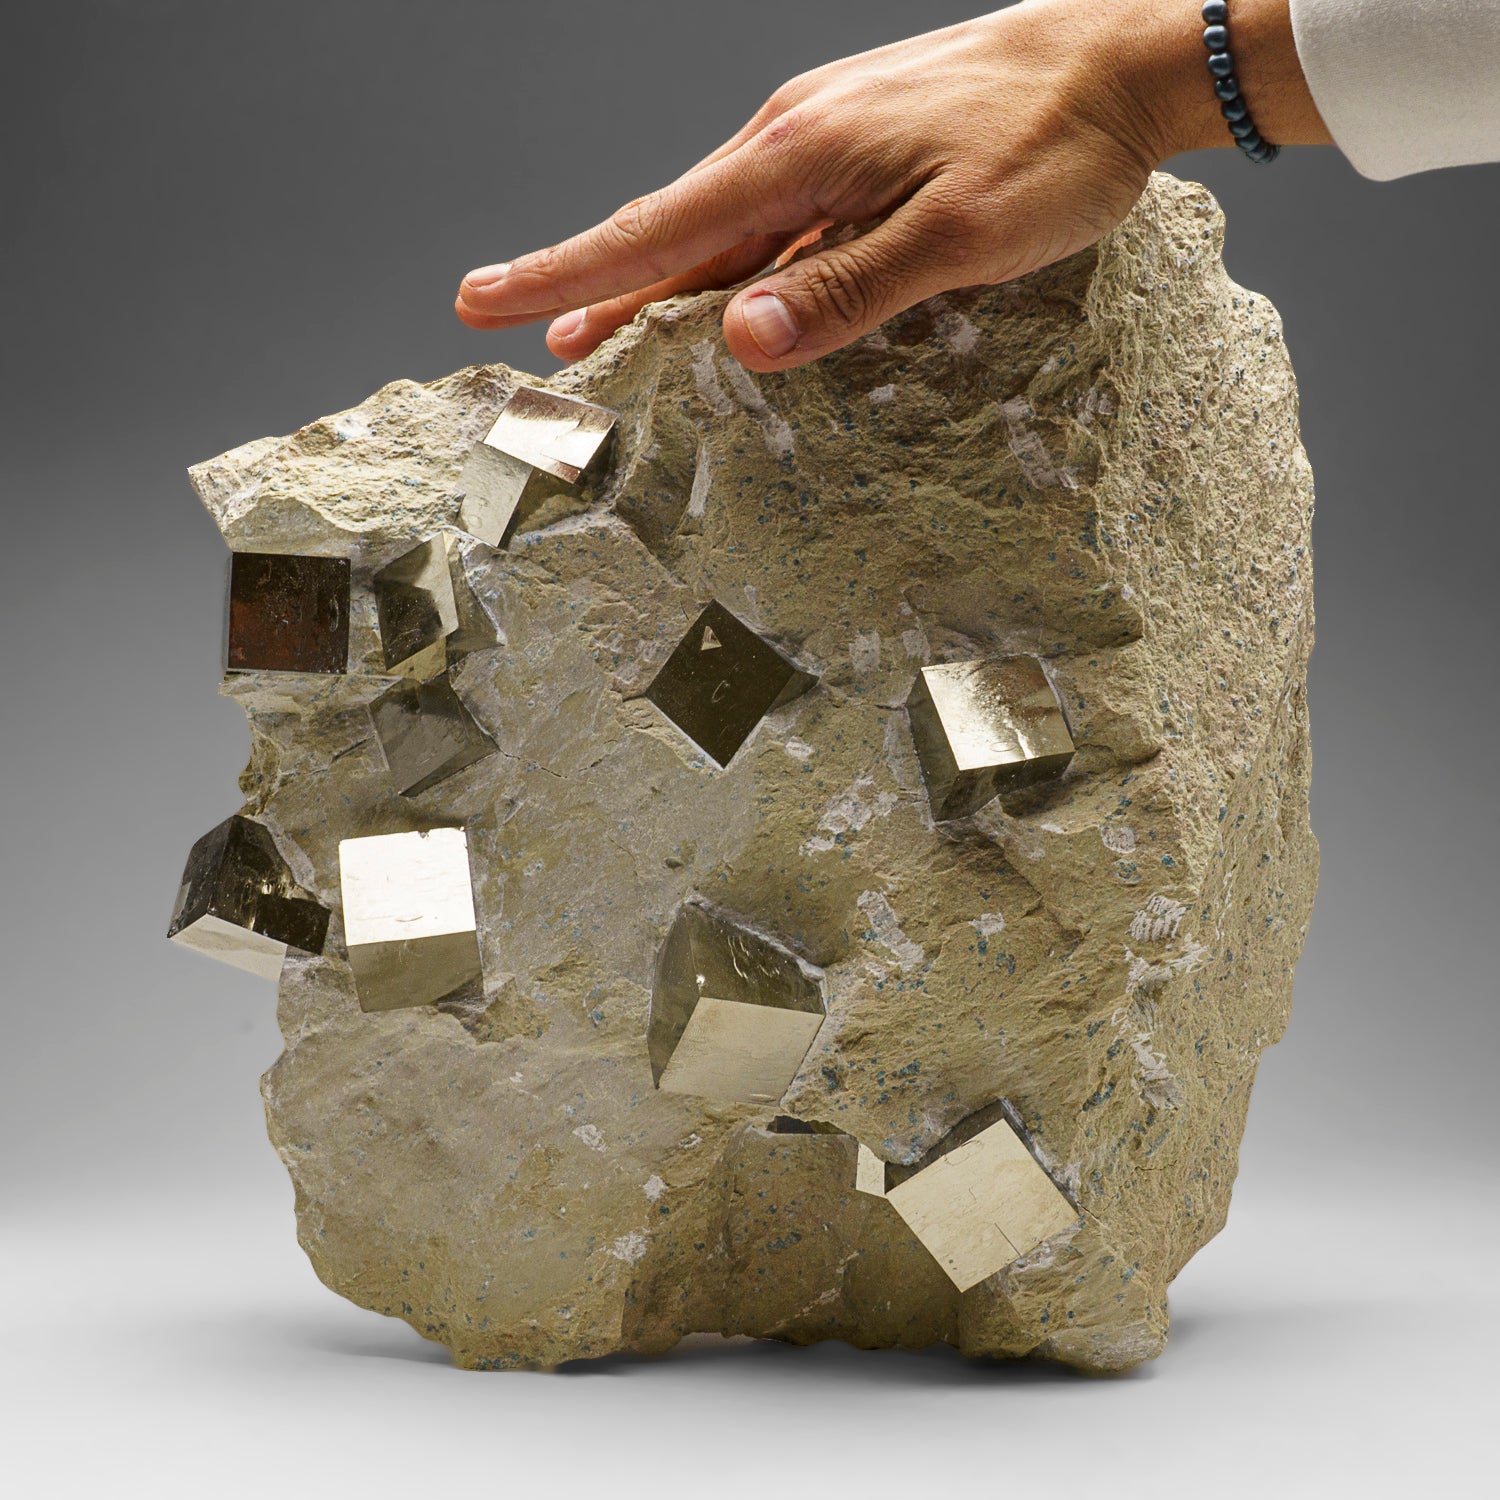 Genuine Pyrite Cubes on Basalt From Navajun, Spain (34.5 lbs)